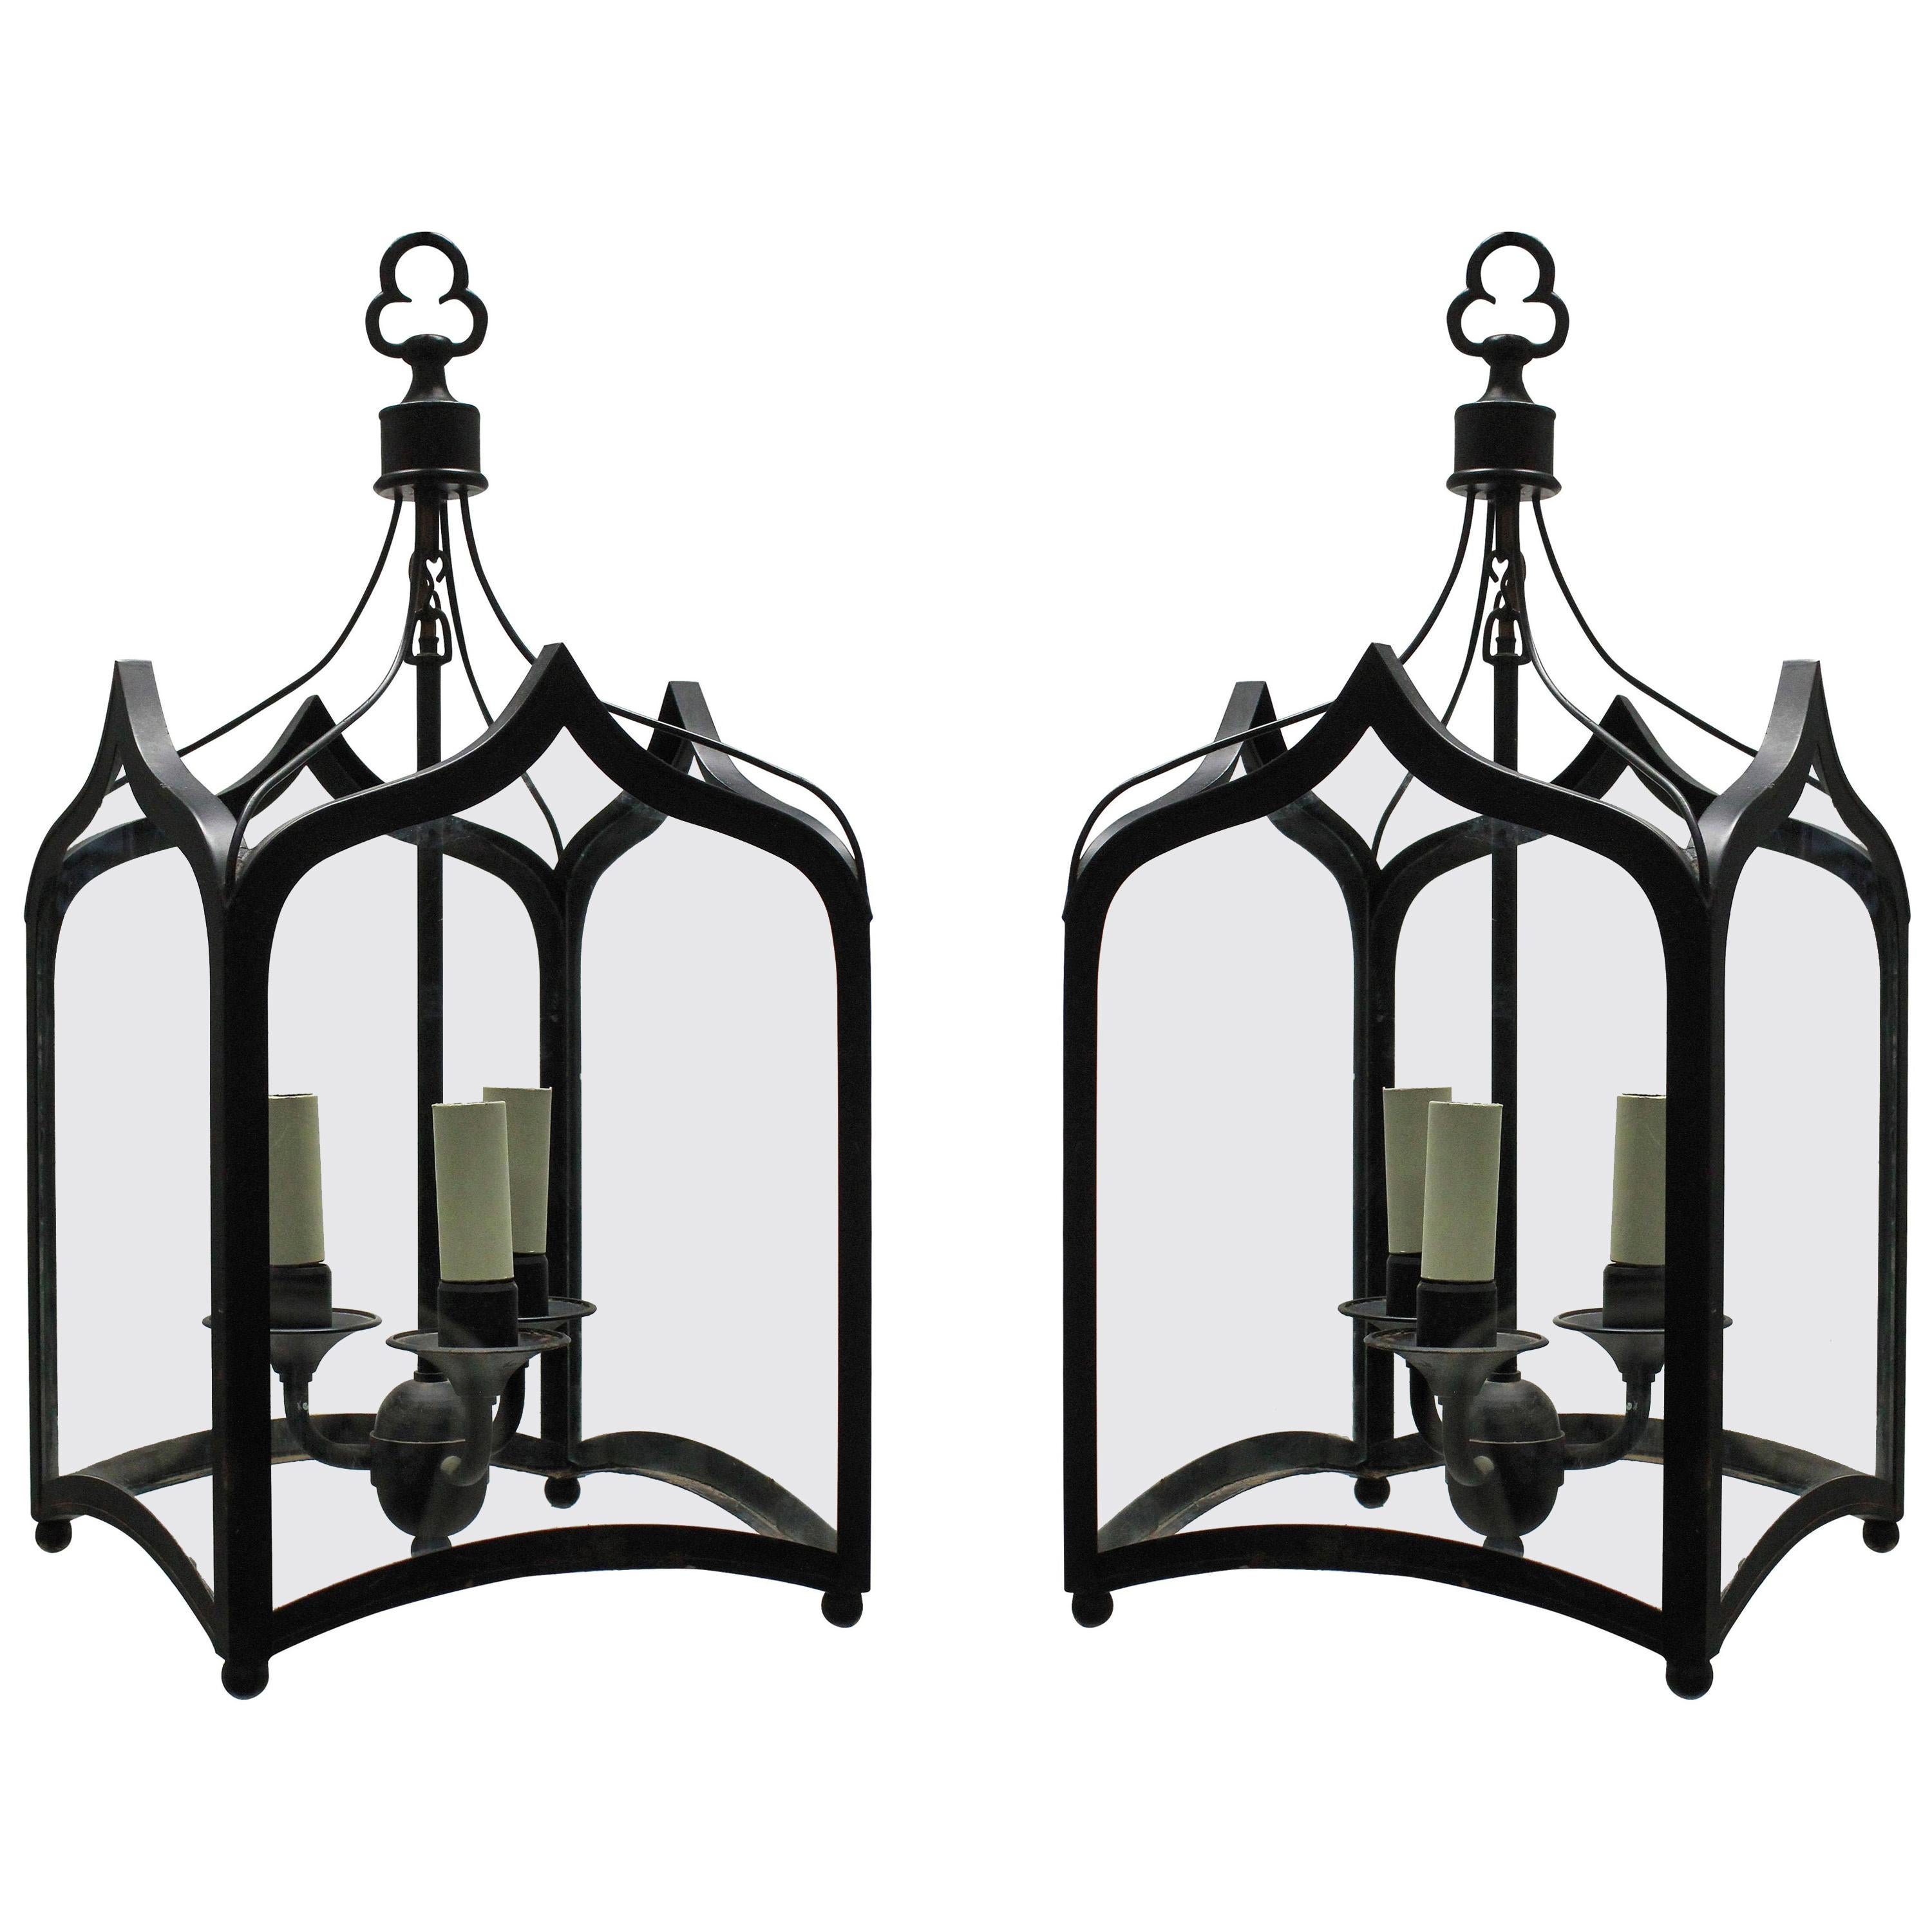 Pair of English Gothic Hanging Lanterns